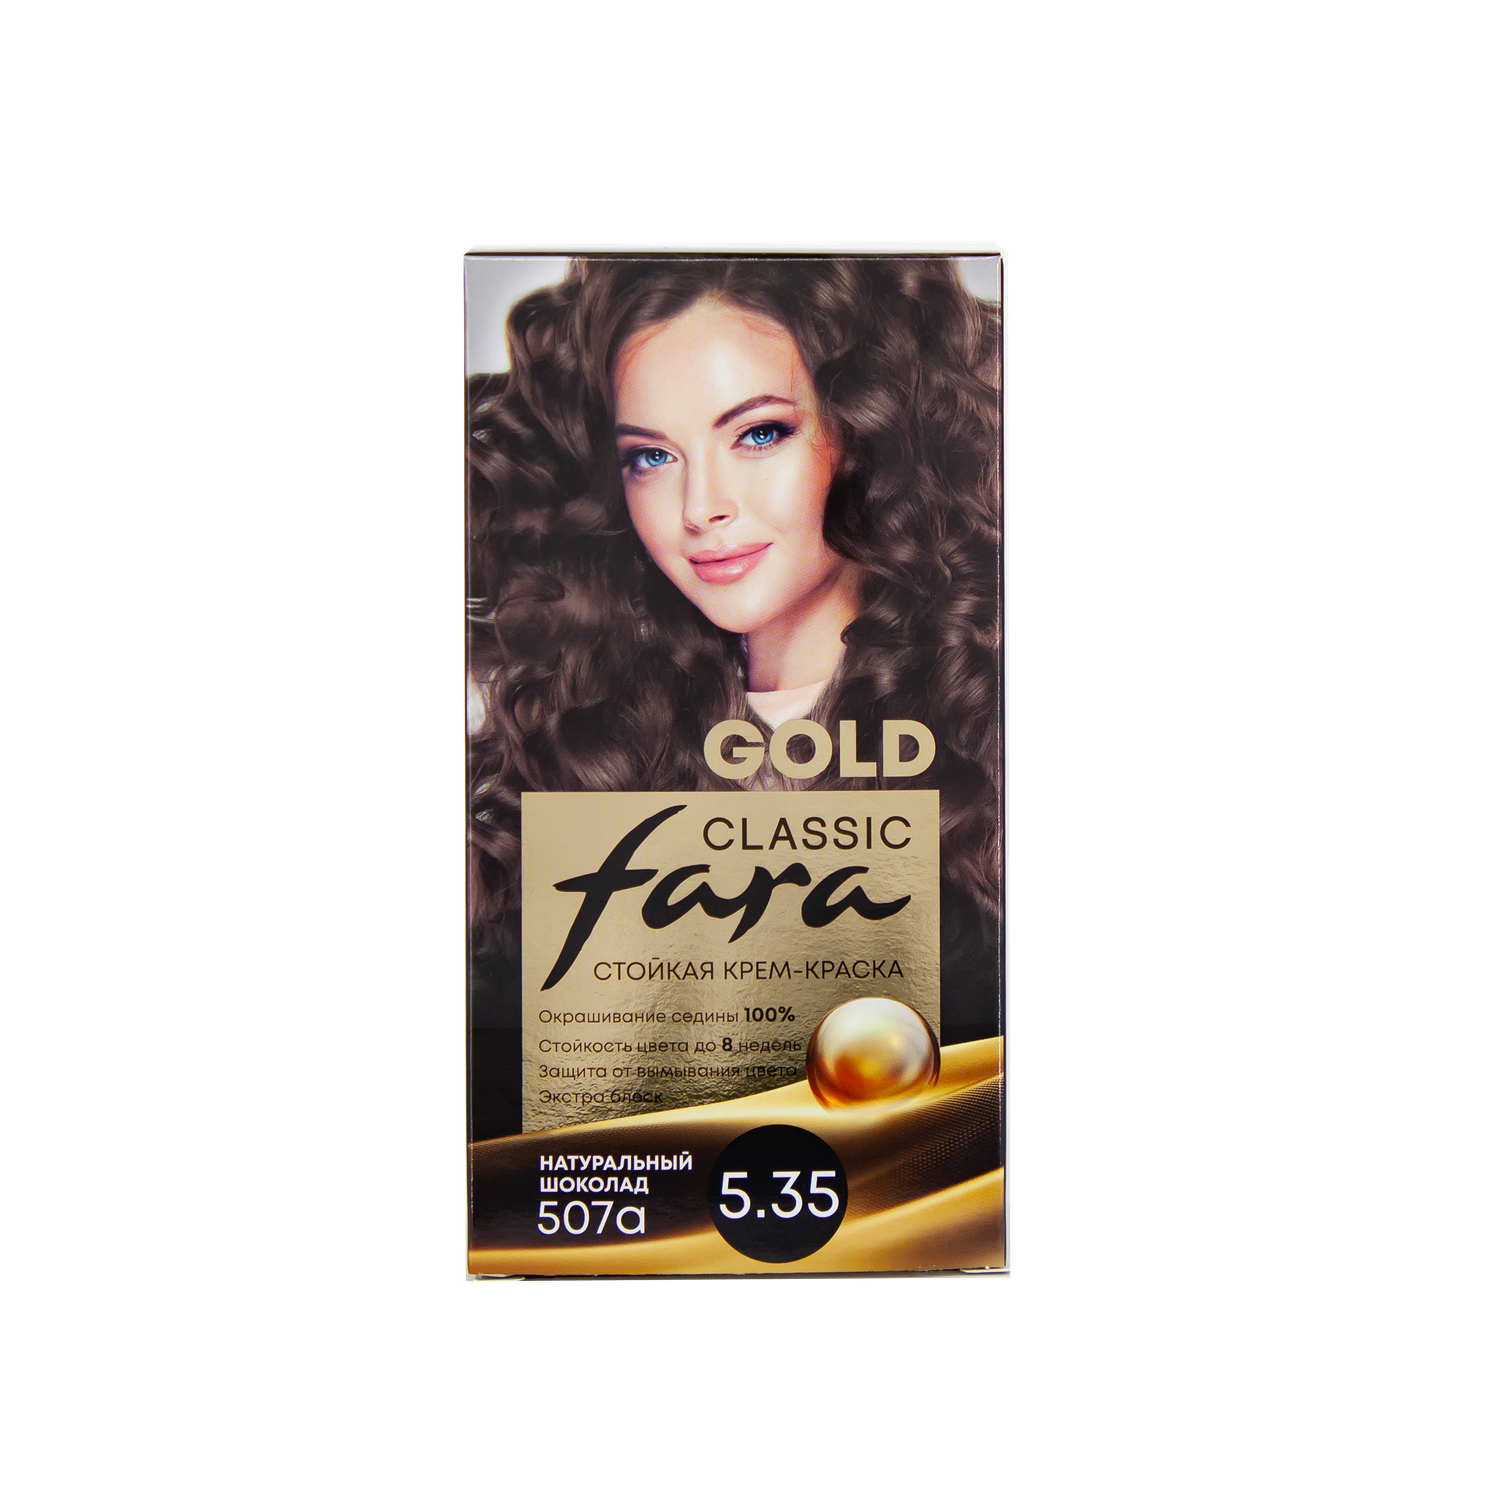 Краска для волос FARA стойкая Classic Gold 507А натуральный шоколад 5.35 - фото 7